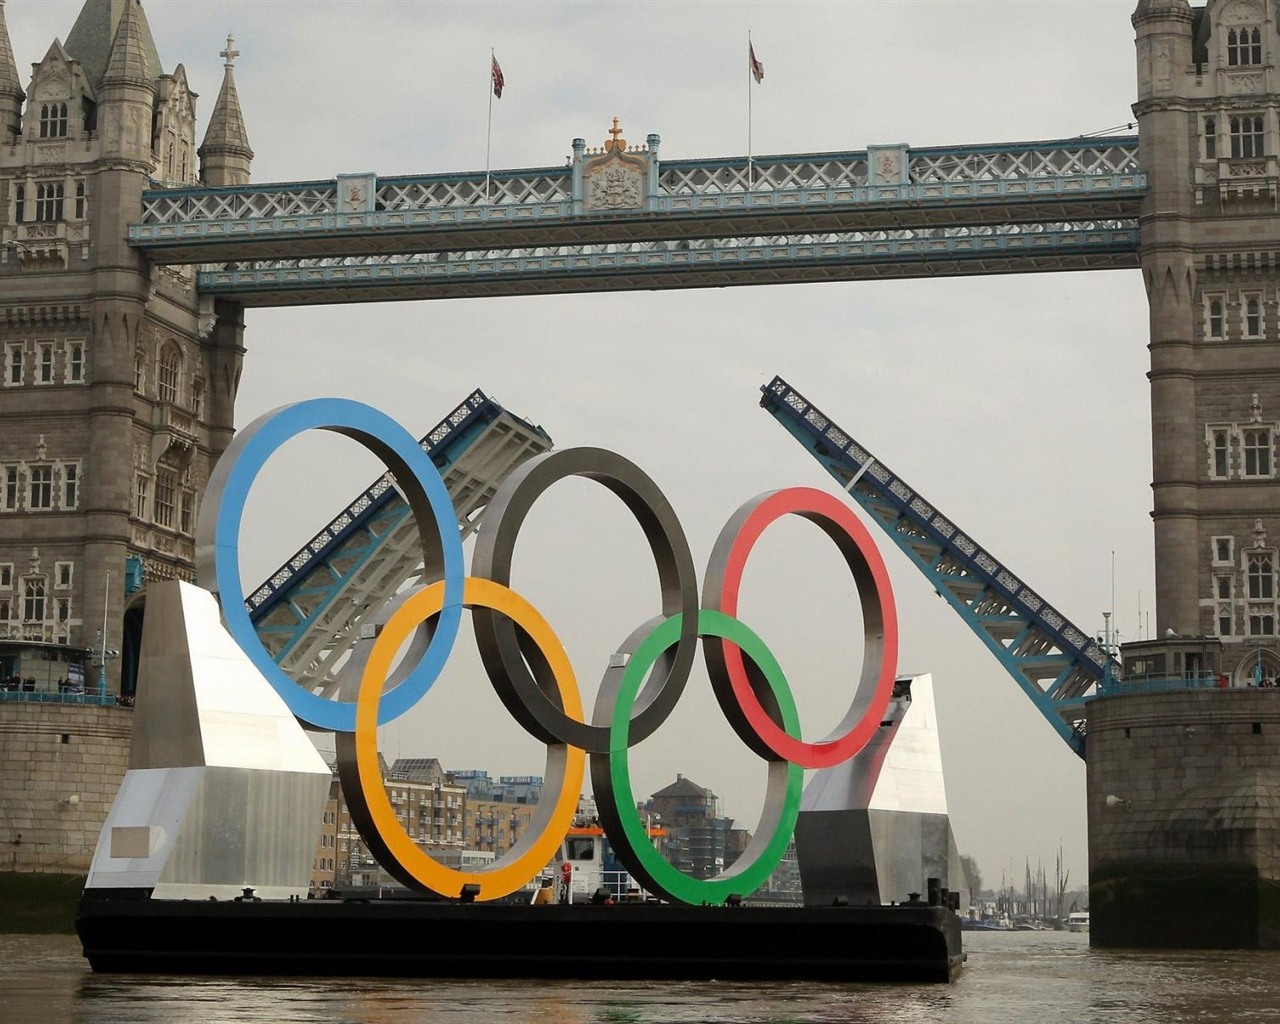 Londres 2012 Olimpiadas fondos temáticos (2) #21 - 1280x1024